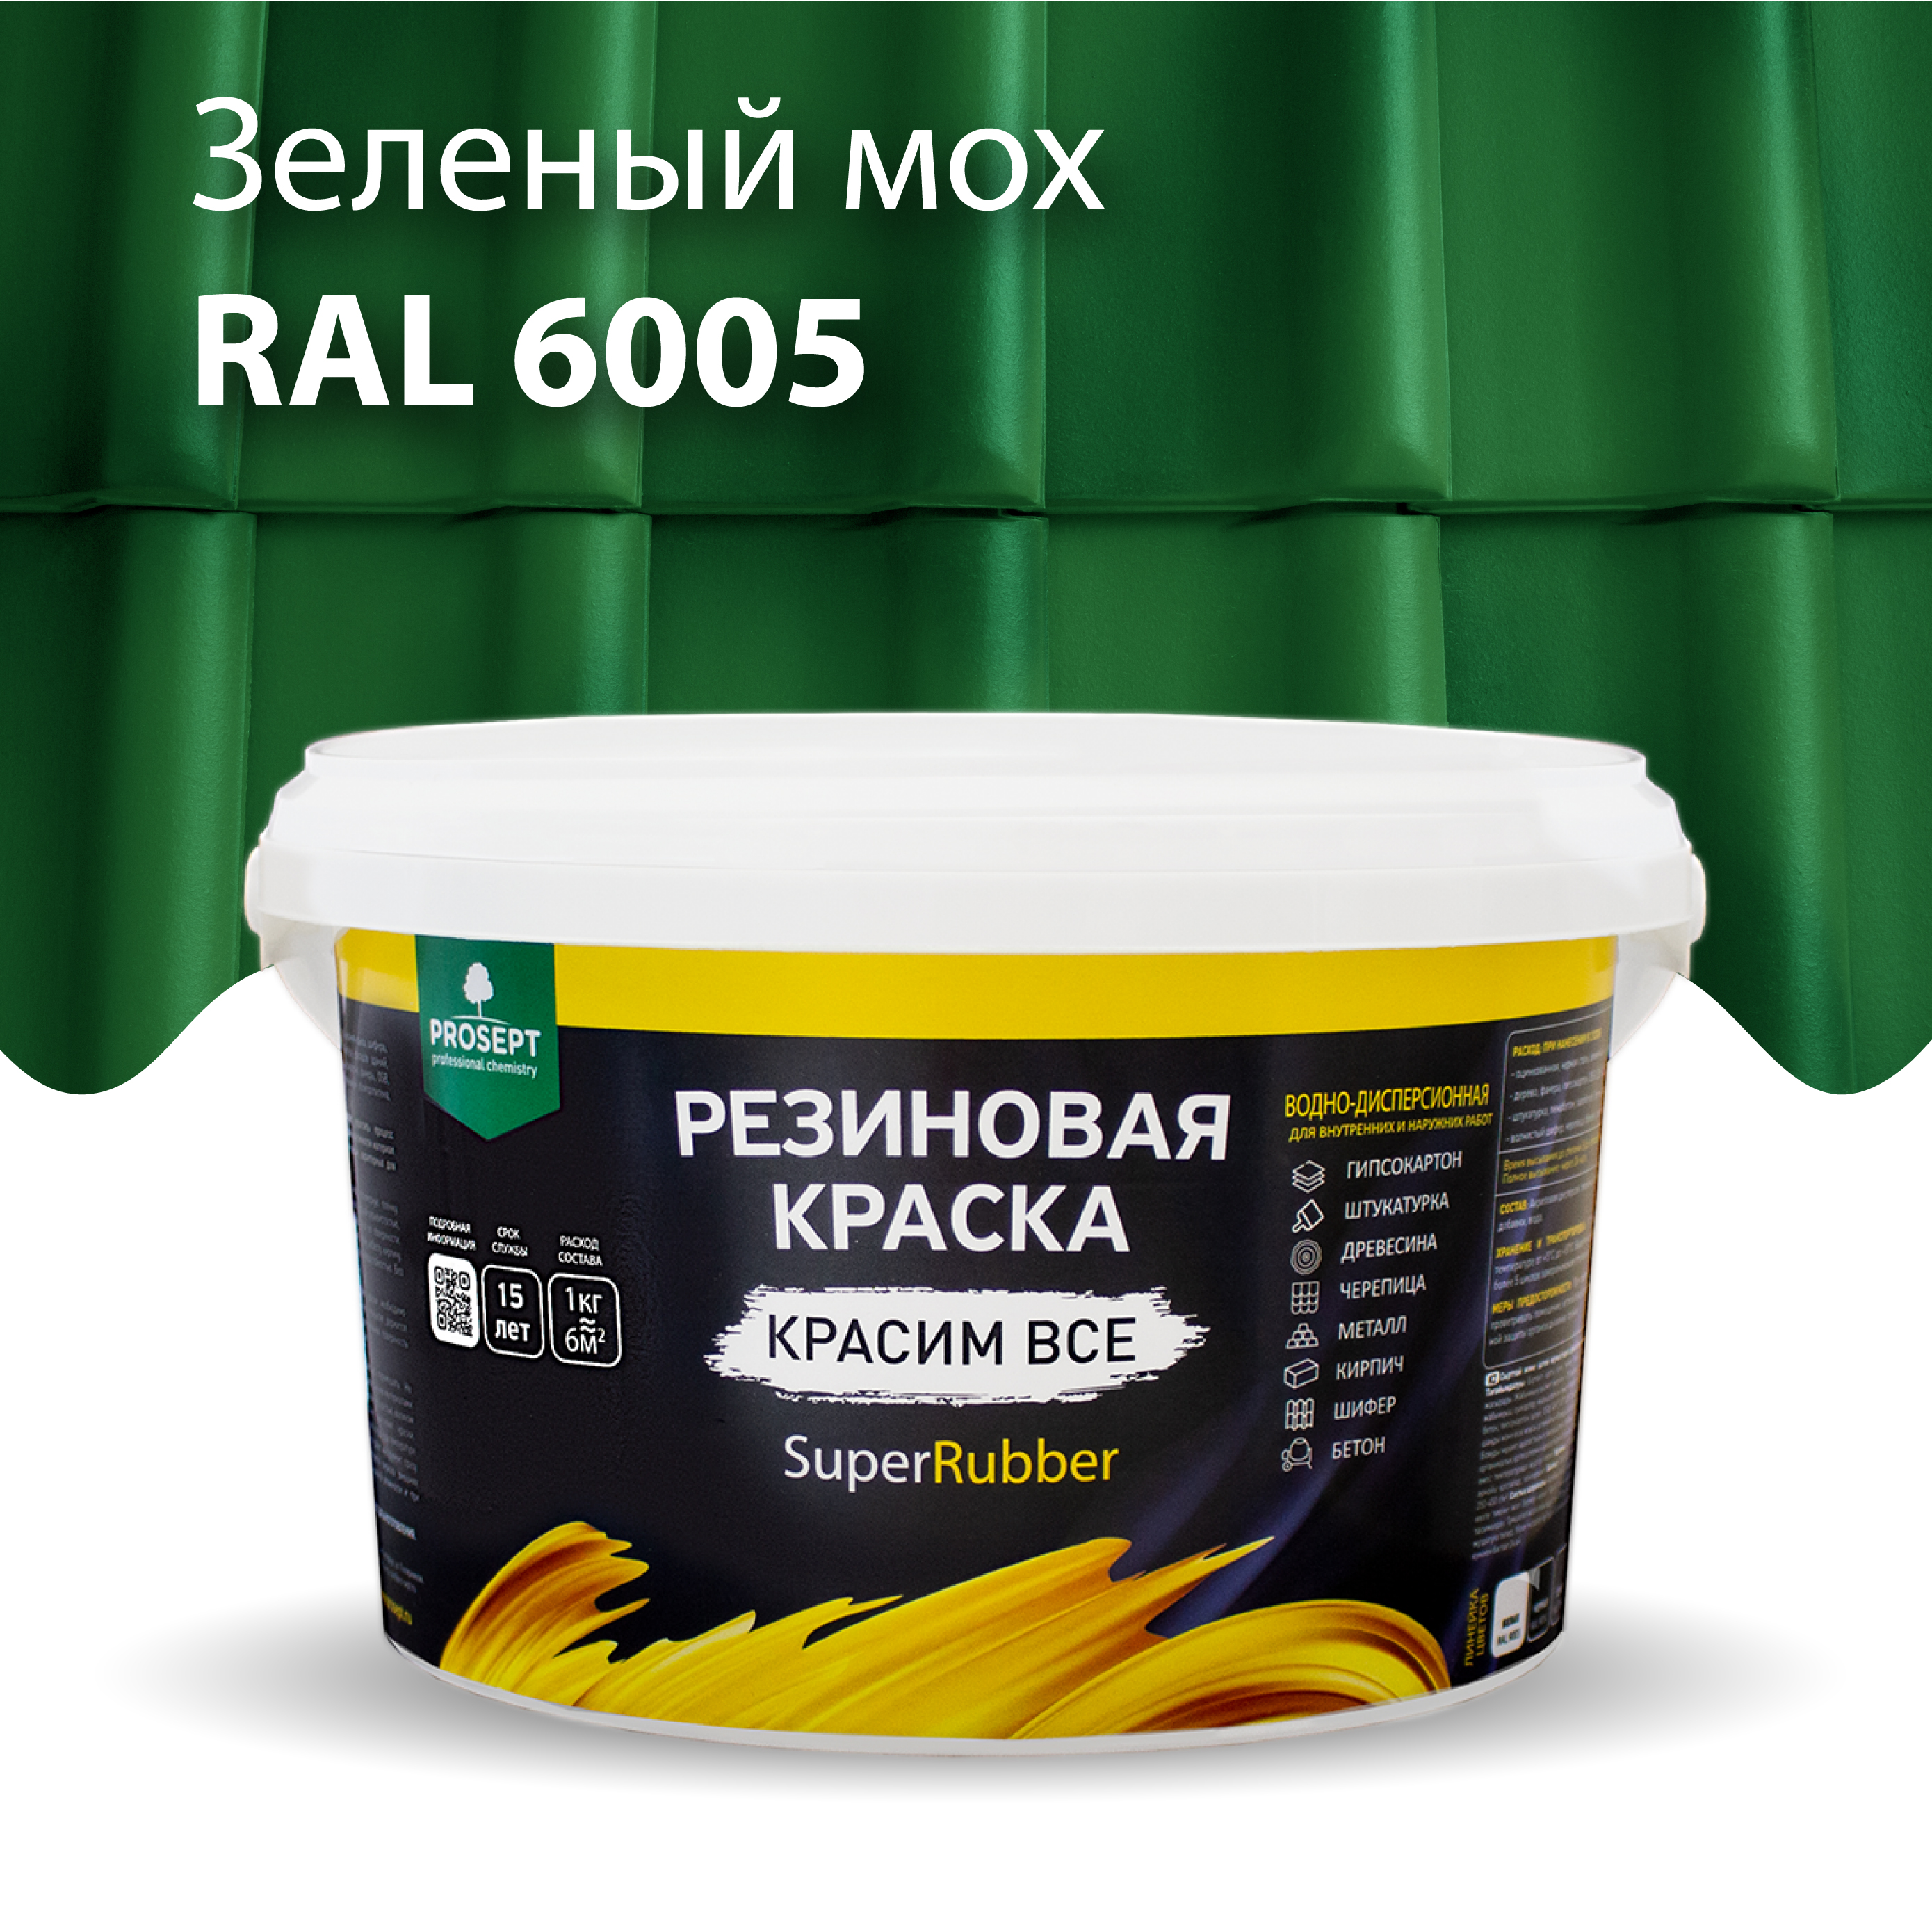 Краска Резиновая краска SuperRubber, RAL 6005 (зеленый мох), 3 кг